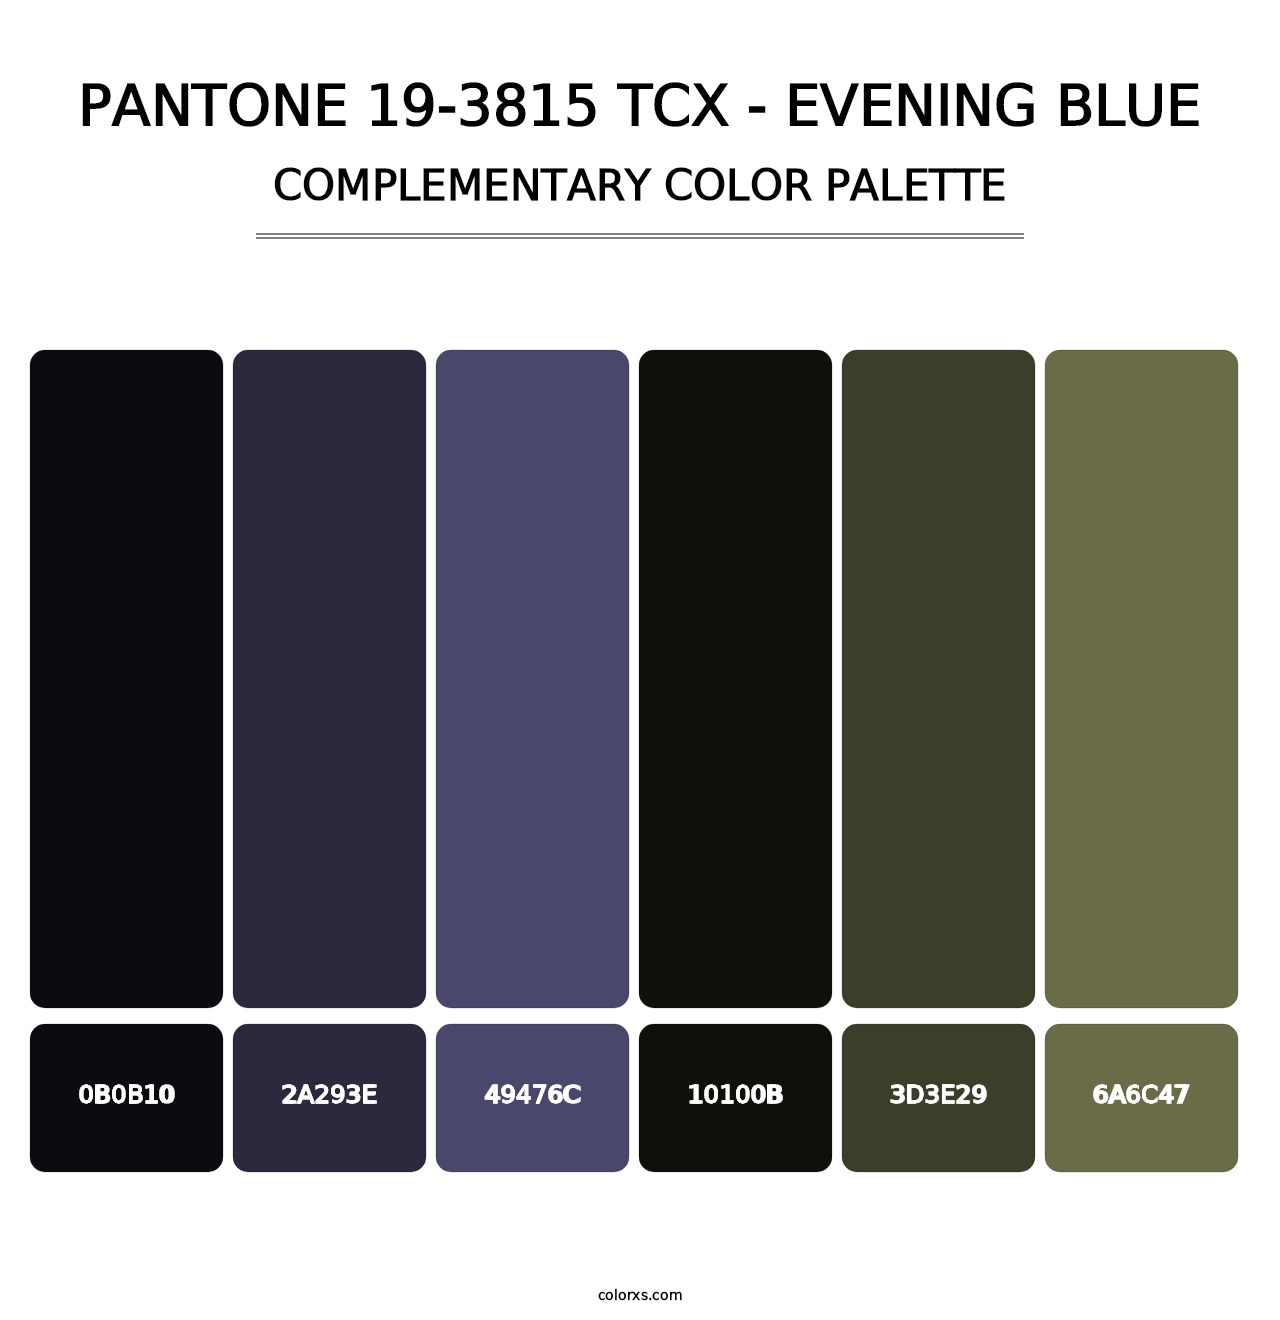 PANTONE 19-3815 TCX - Evening Blue - Complementary Color Palette